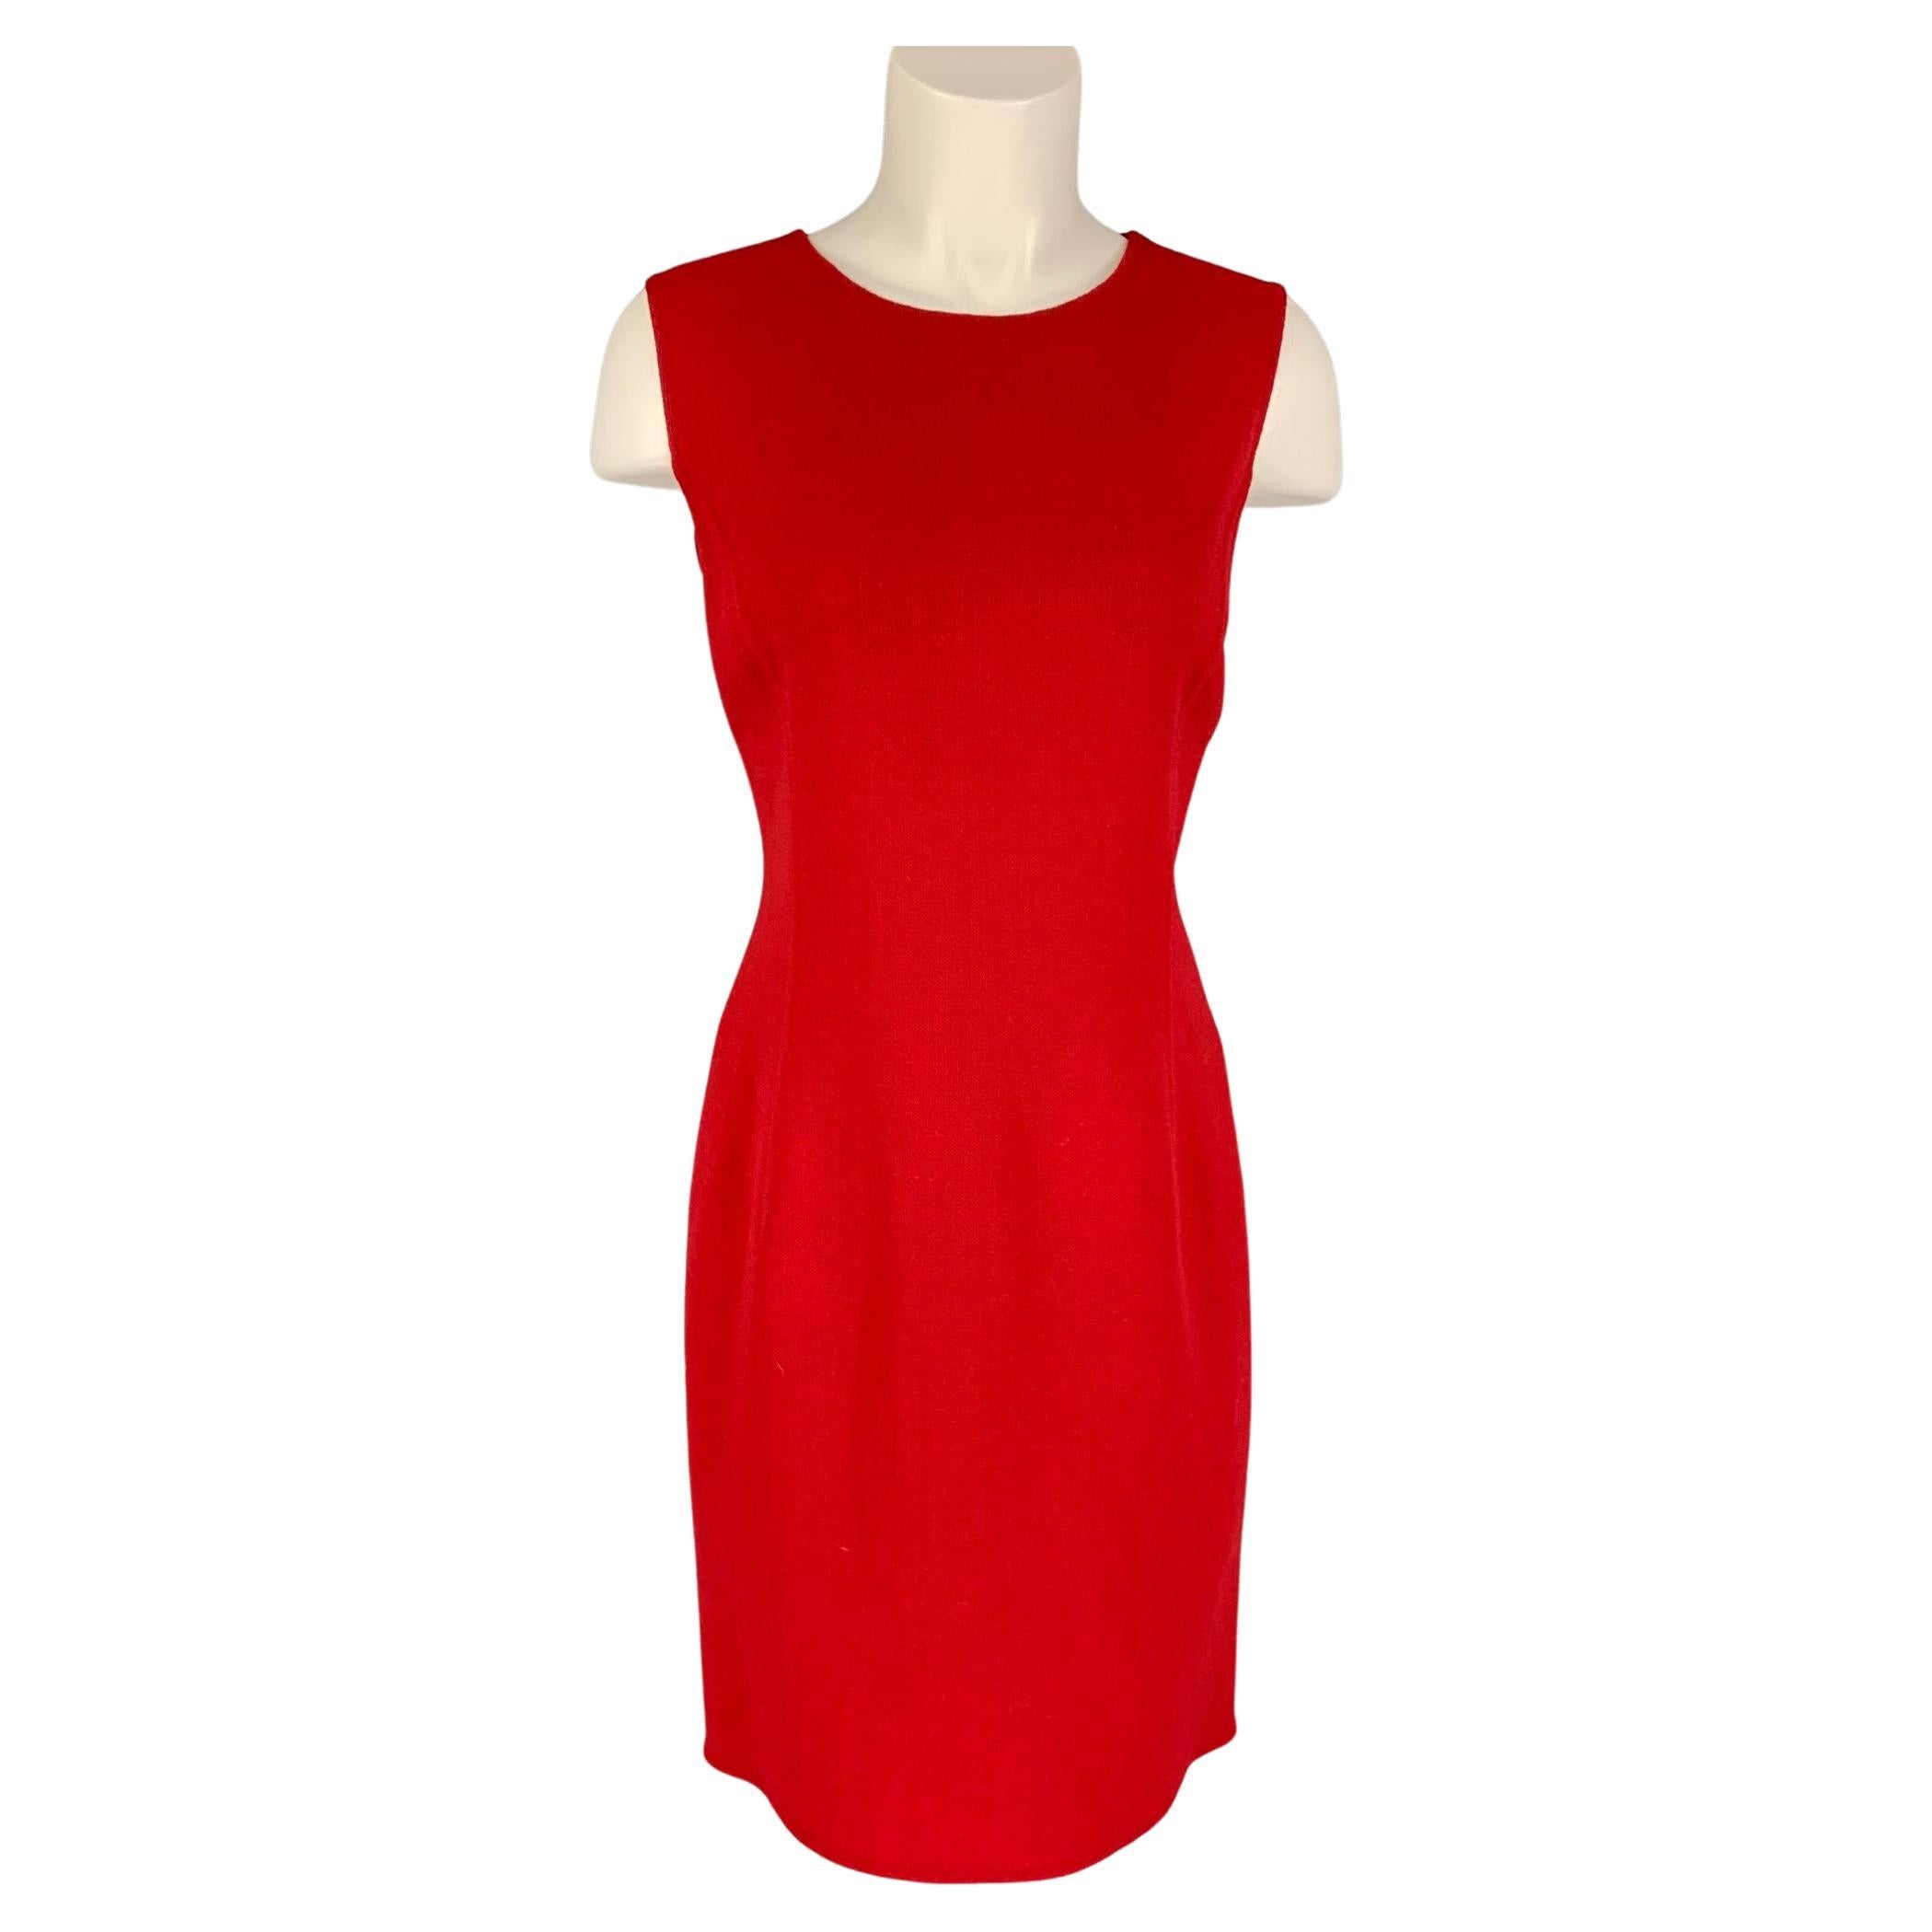 OSCAR DE LA RENTA Size 6 Red Virgin Wool Blend Shift Dress